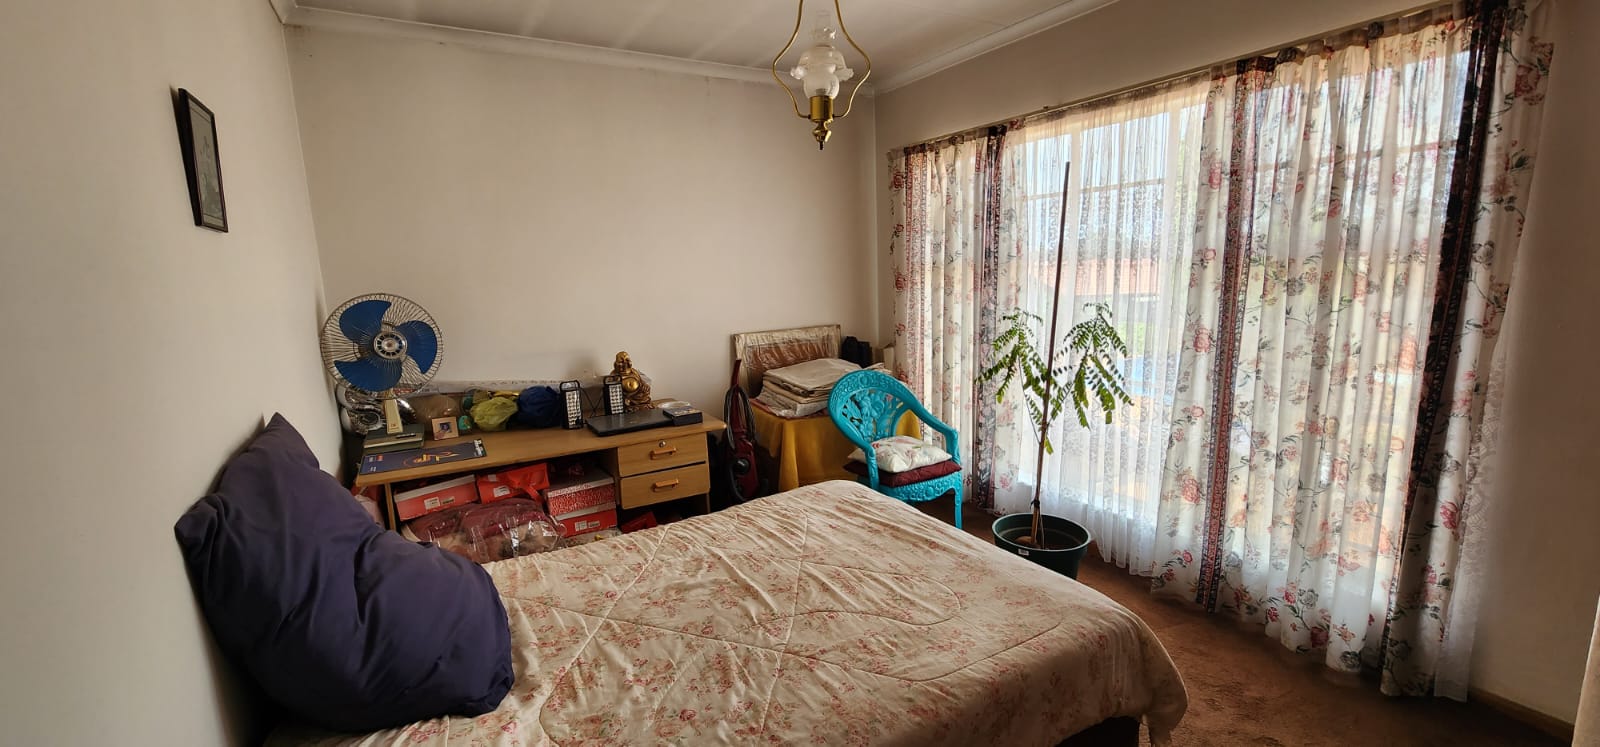 3 Bedroom Property for Sale in Bakerton Gauteng